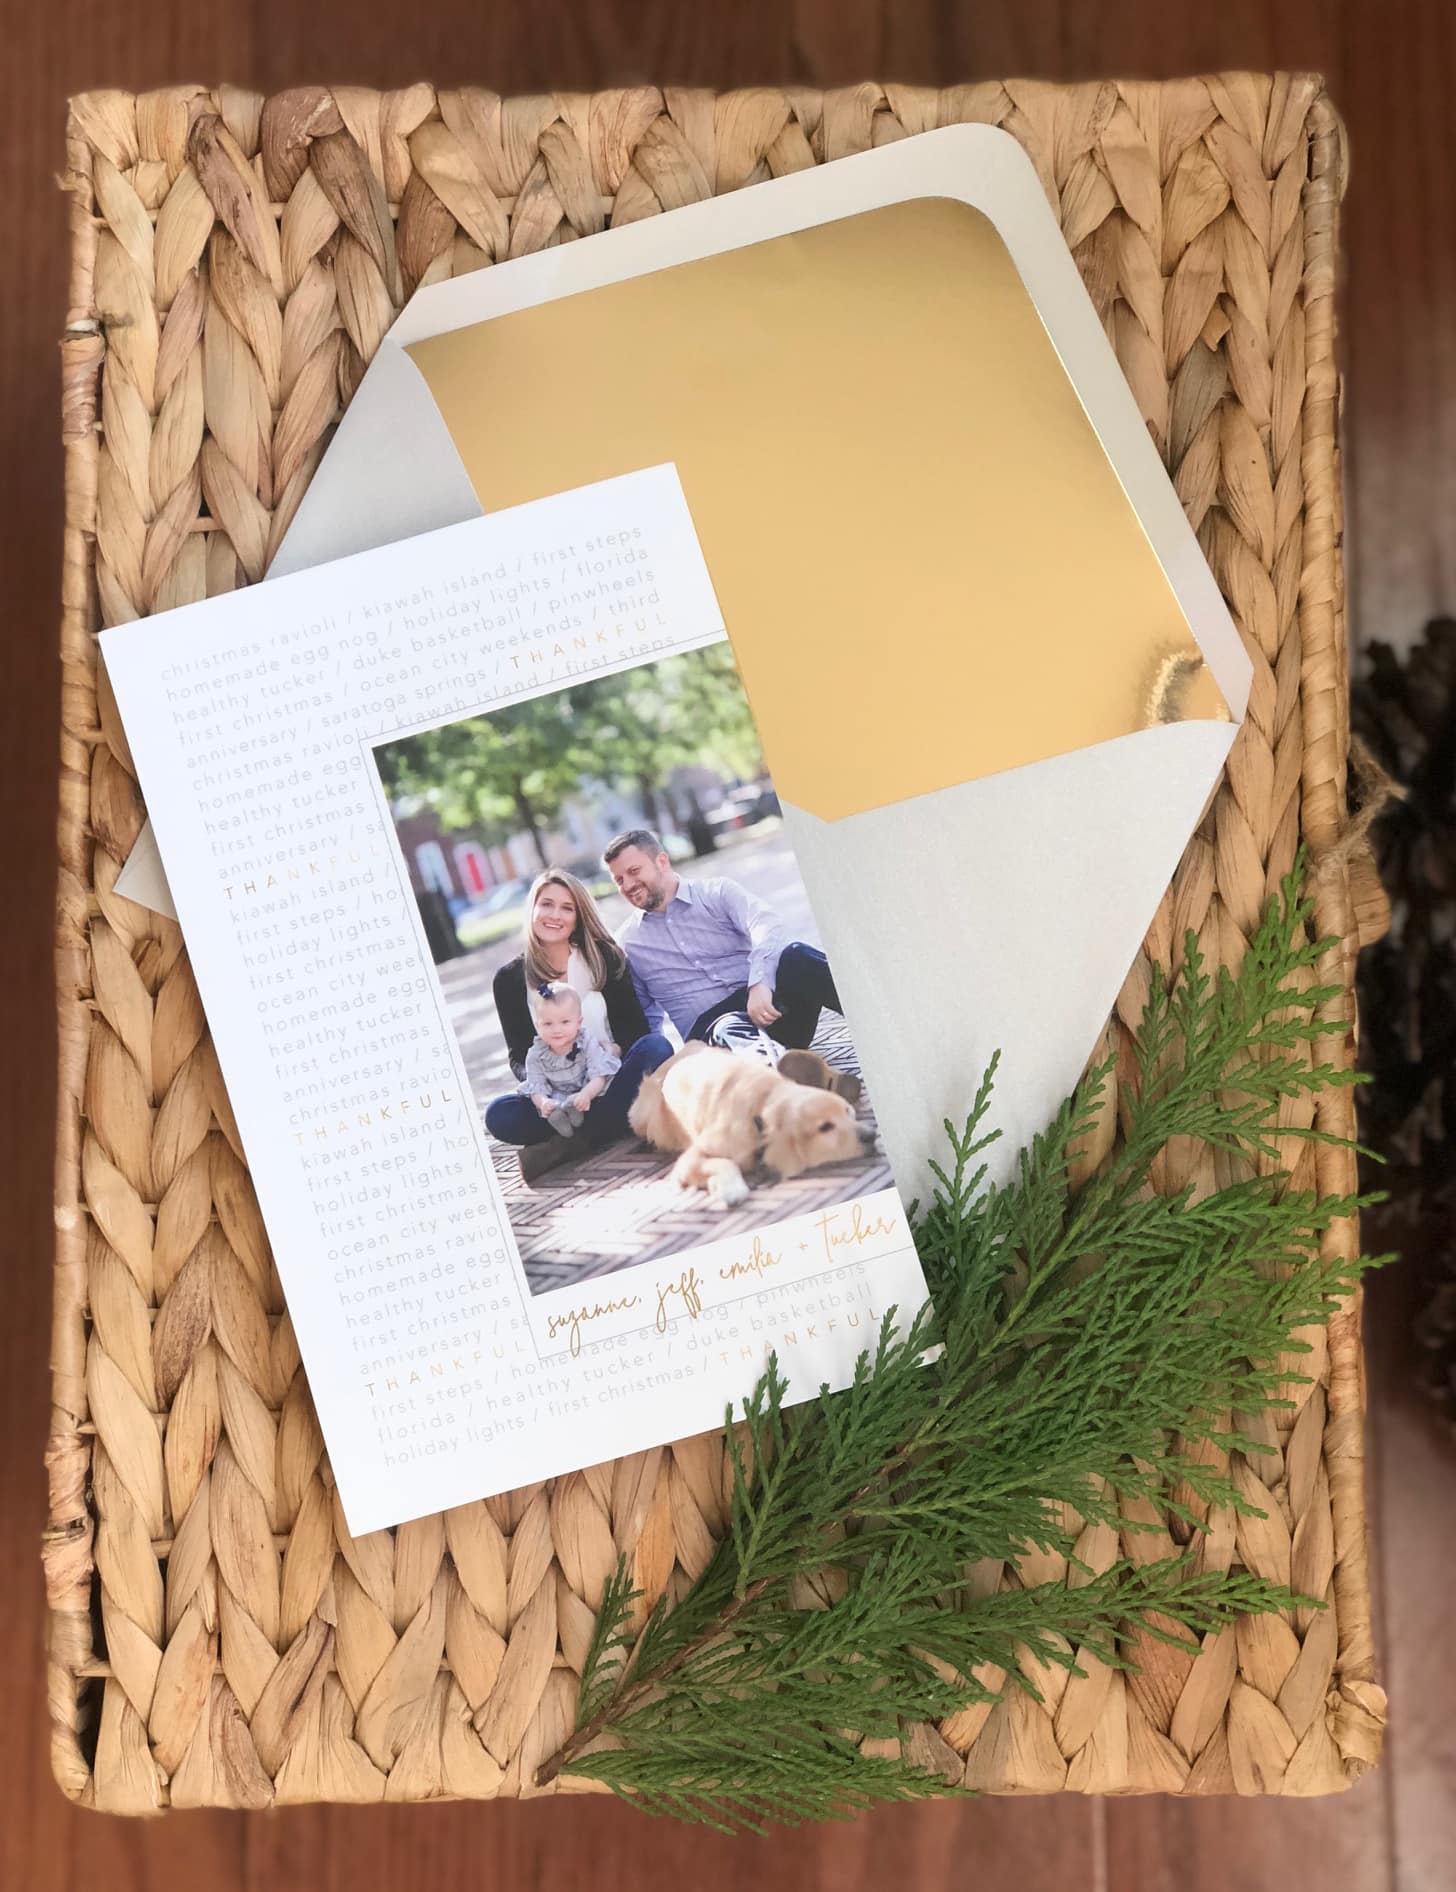 loveleigh’s latest: raffaele family holiday card.